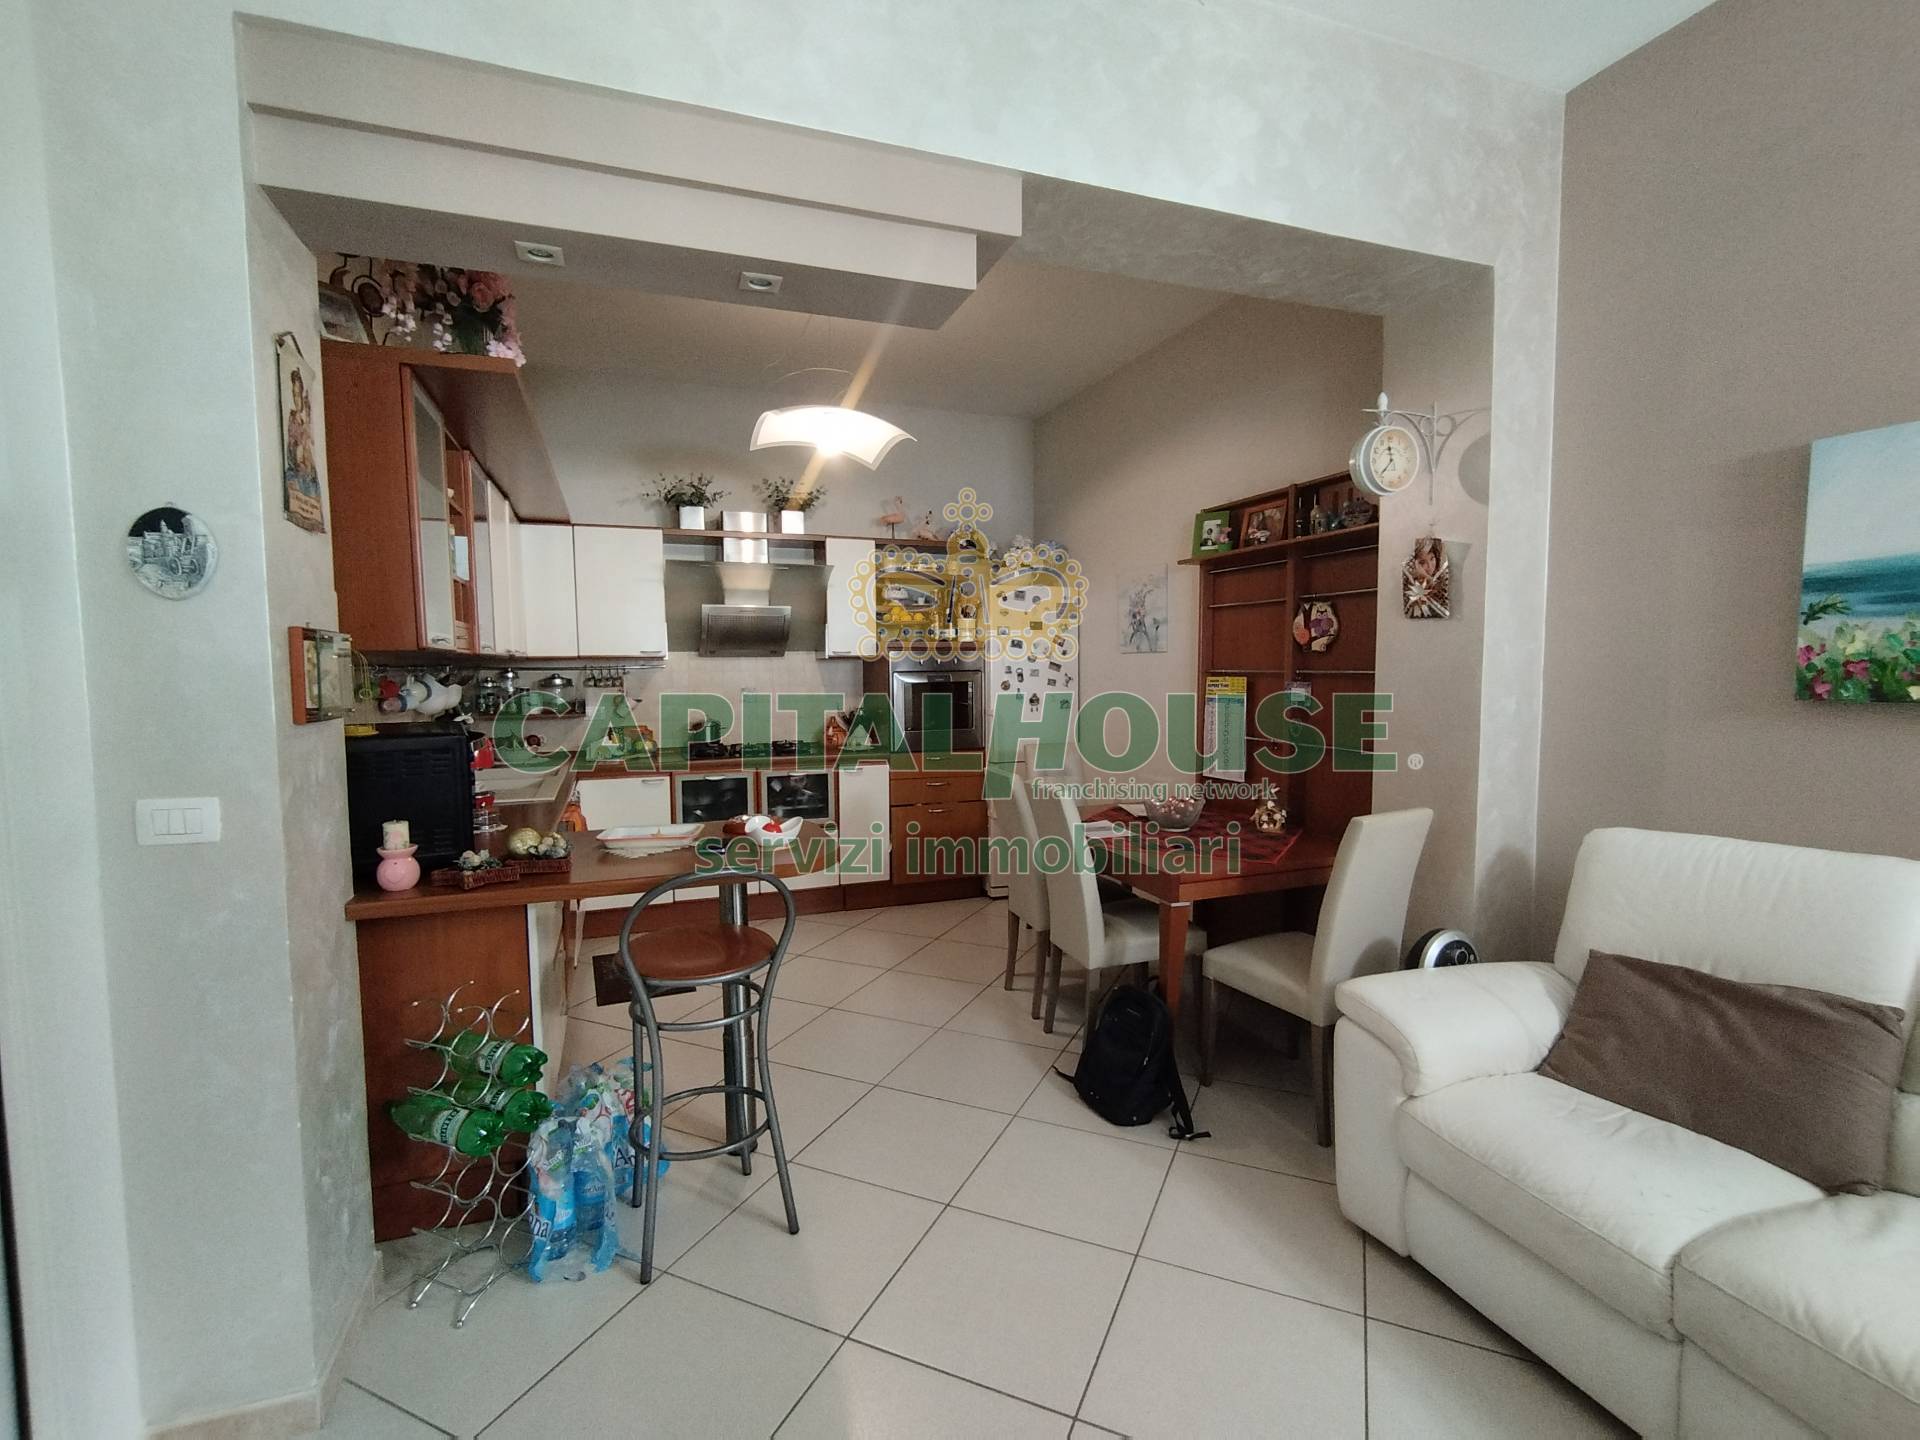 Appartamento in vendita a Vitulazio, 5 locali, prezzo € 115.000 | PortaleAgenzieImmobiliari.it